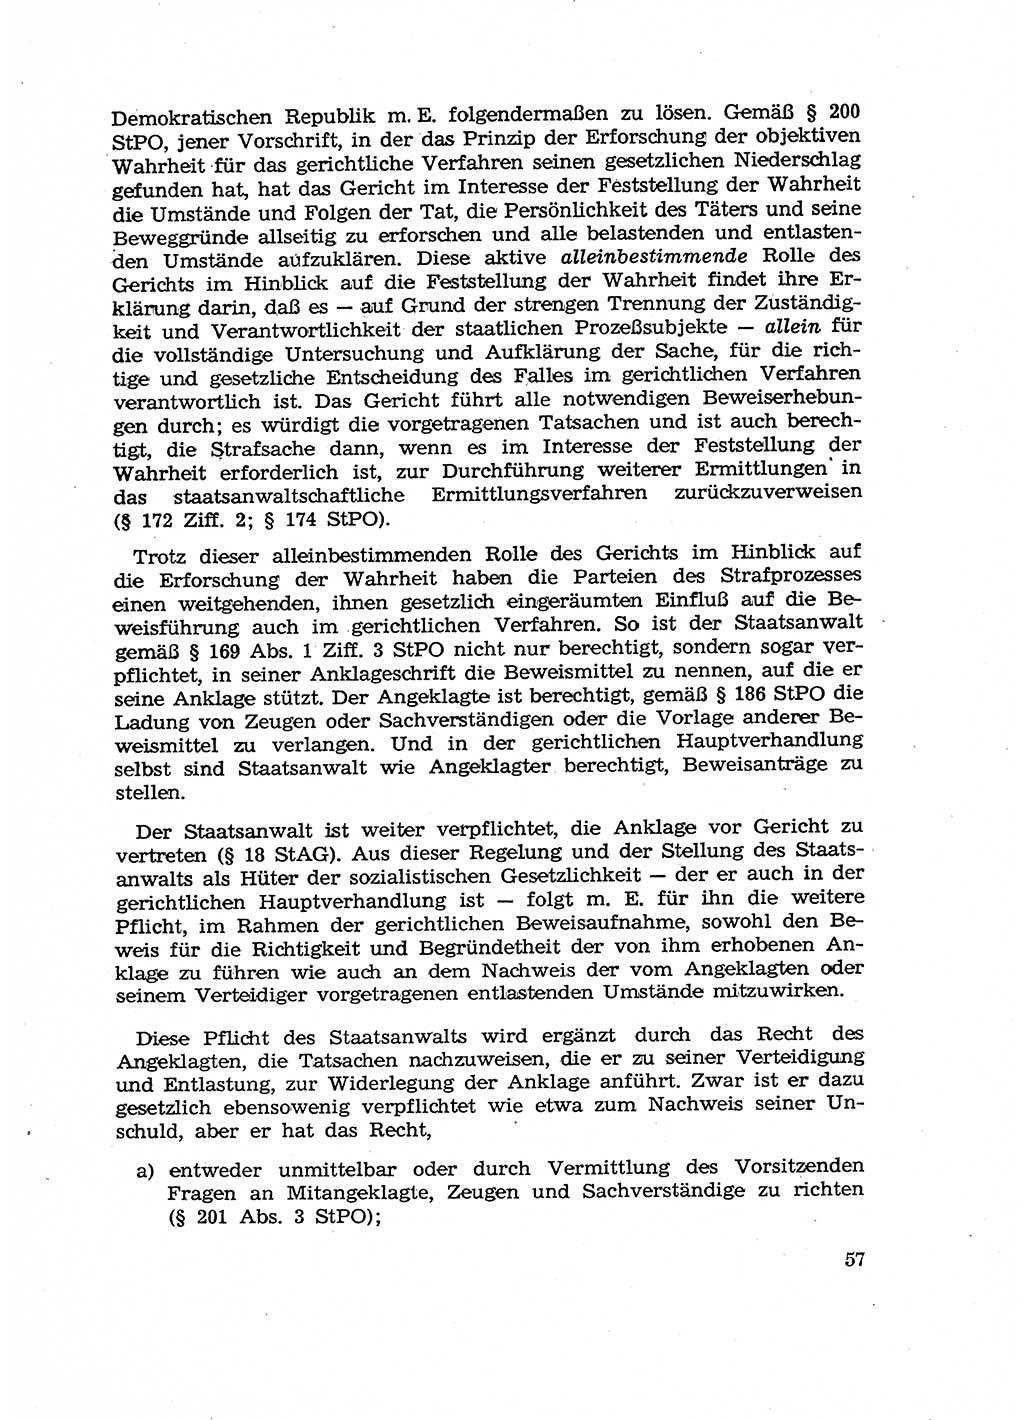 Fragen des Beweisrechts im Strafprozess [Deutsche Demokratische Republik (DDR)] 1956, Seite 57 (Fr. BeweisR. Str.-Proz. DDR 1956, S. 57)